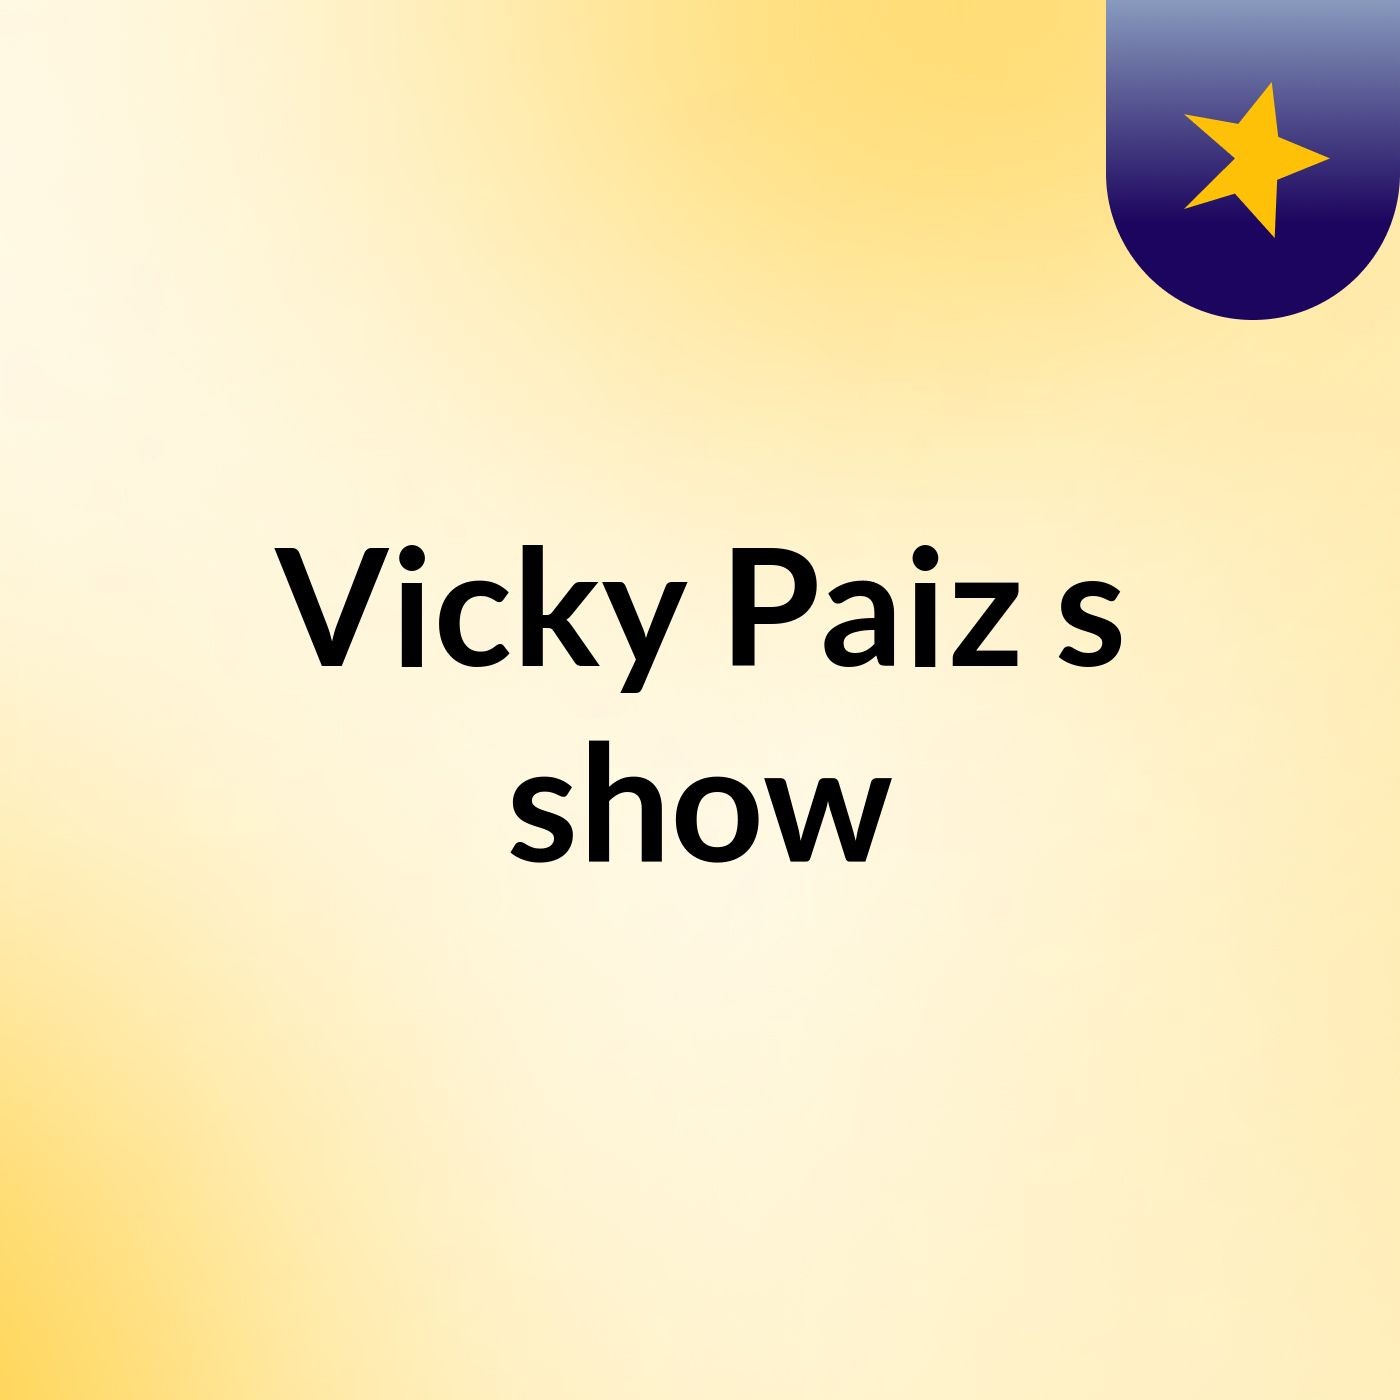 Vicky Paiz's show